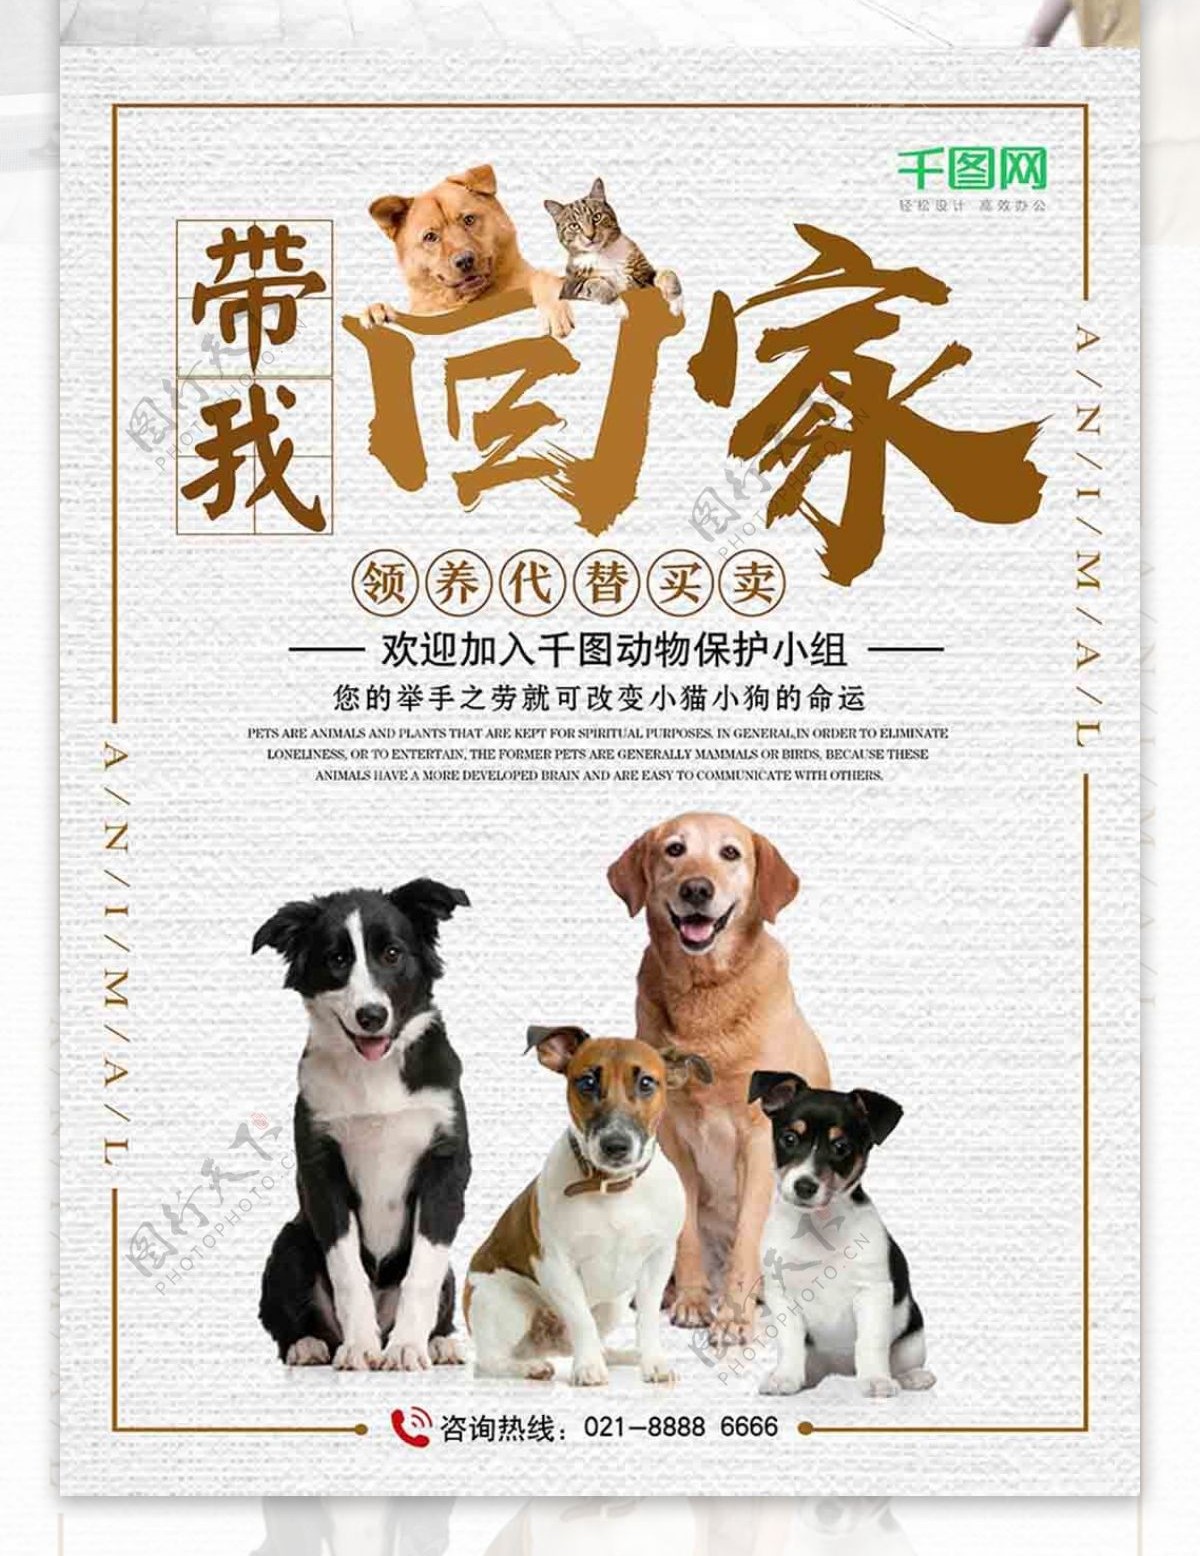 关爱流浪动物宠物领养公益宣传海报